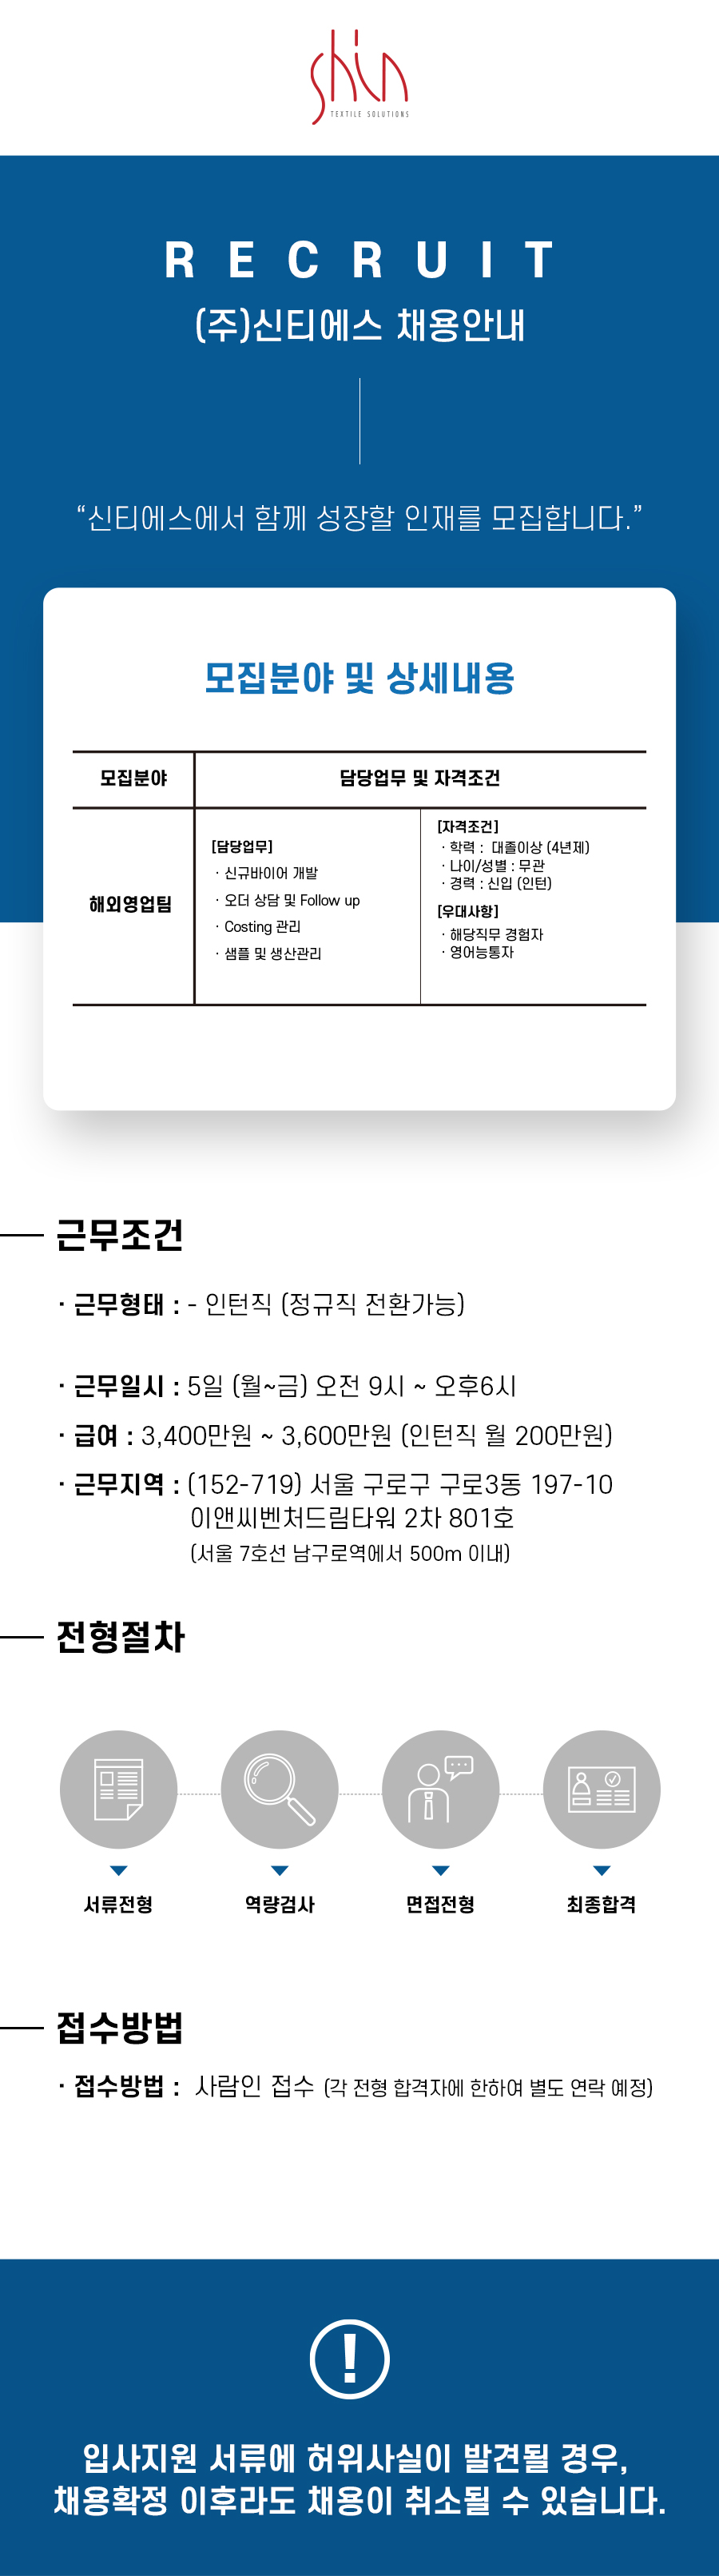 해외영업팀_20211109 (1).jpg